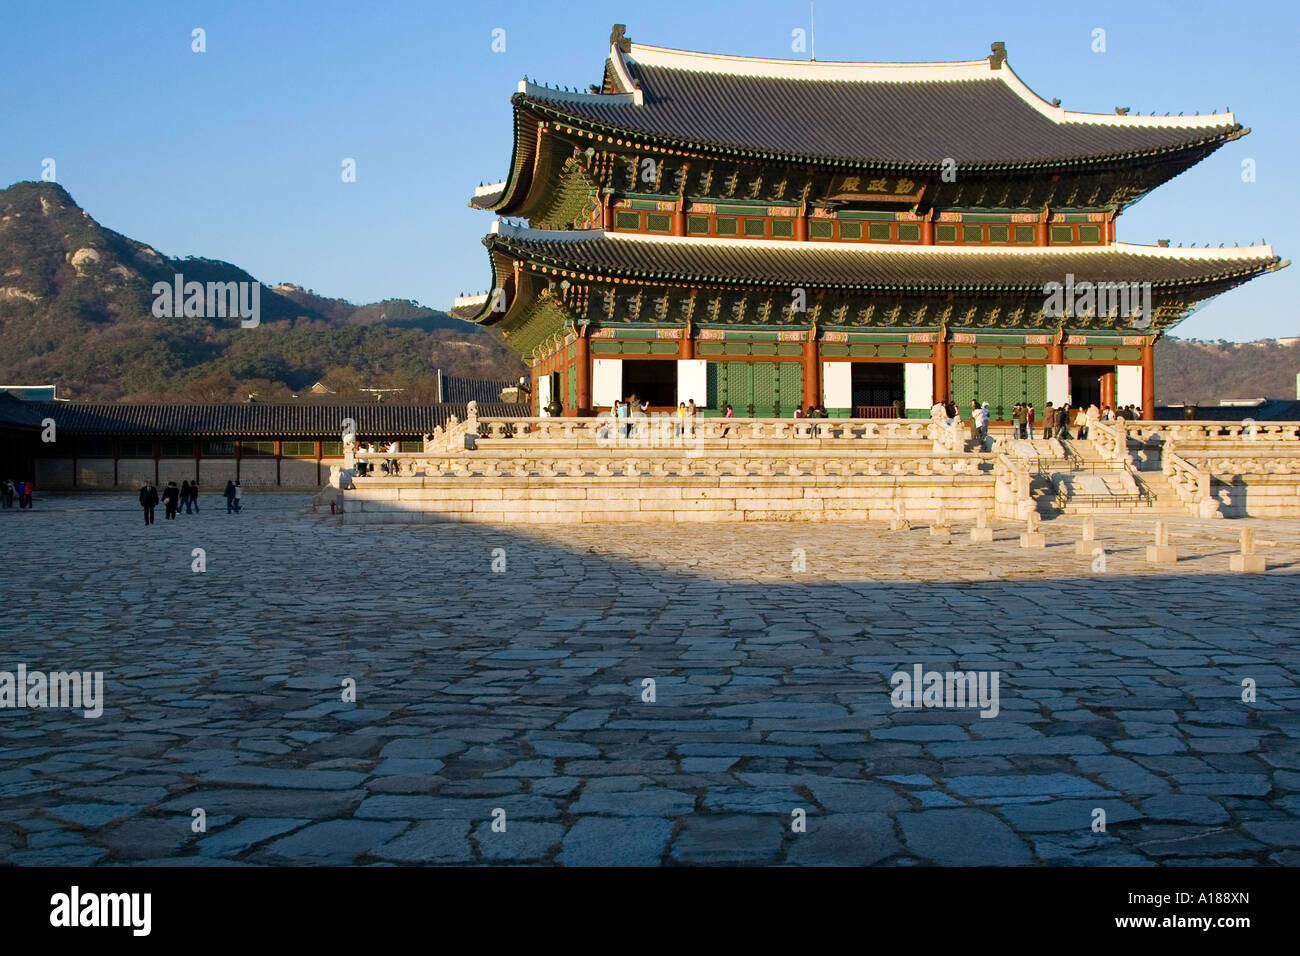 Geunjeongjeon Courtyard, Gyeongbokgung Palace, Seoul, Korea Stock Photo